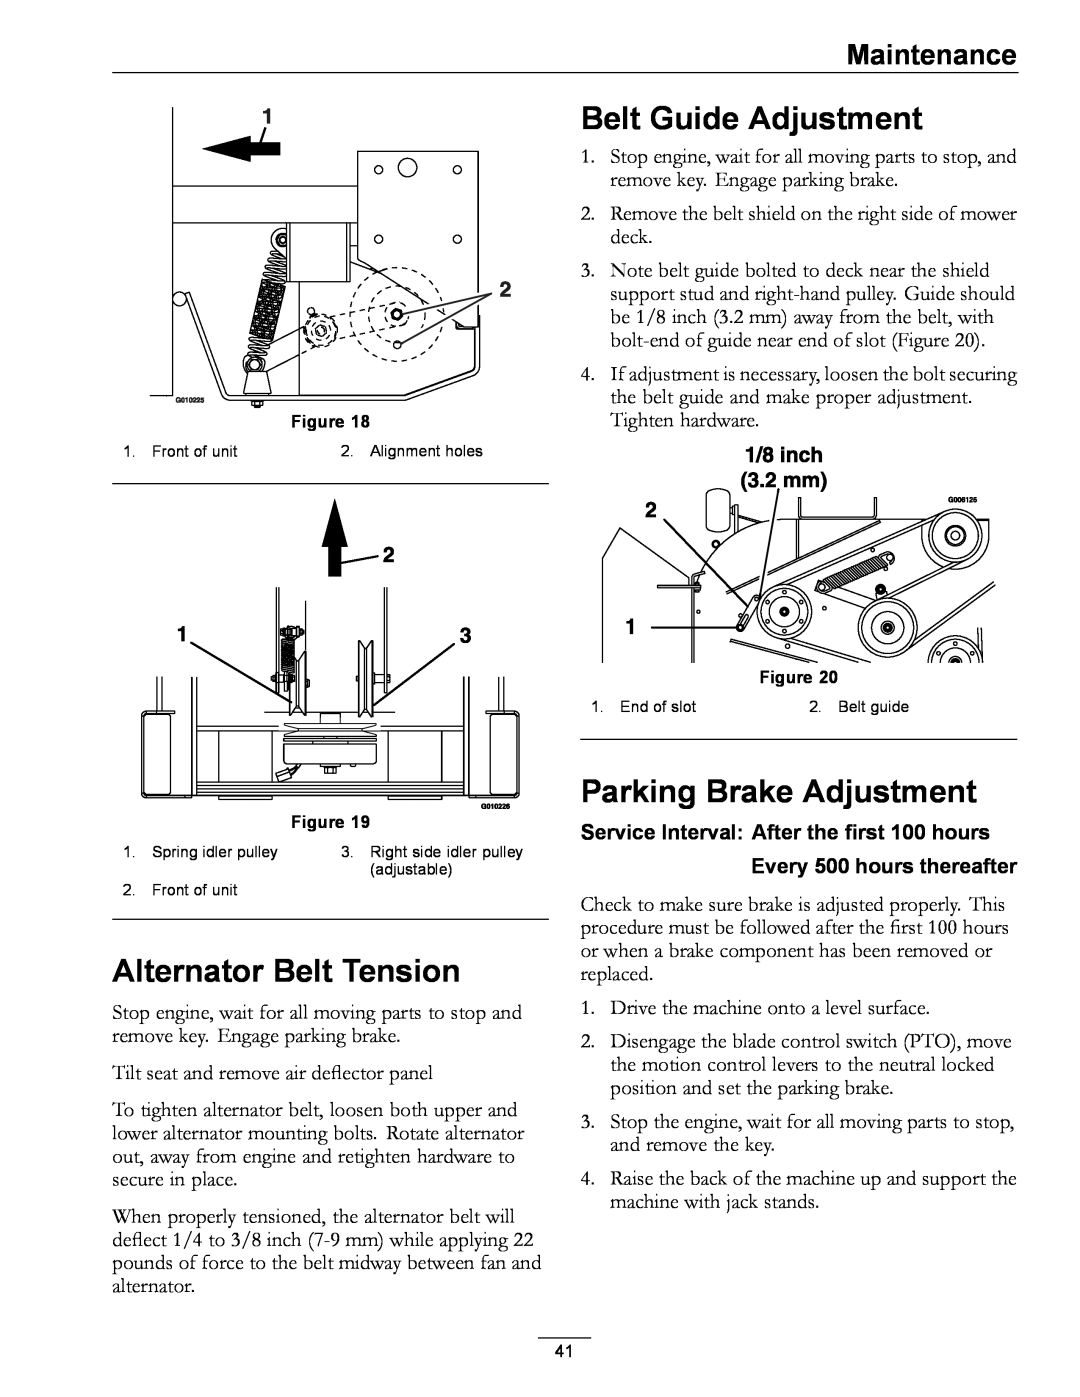 Exmark 920 manual Belt Guide Adjustment, Alternator Belt Tension, Parking Brake Adjustment, Every 500 hours thereafter 